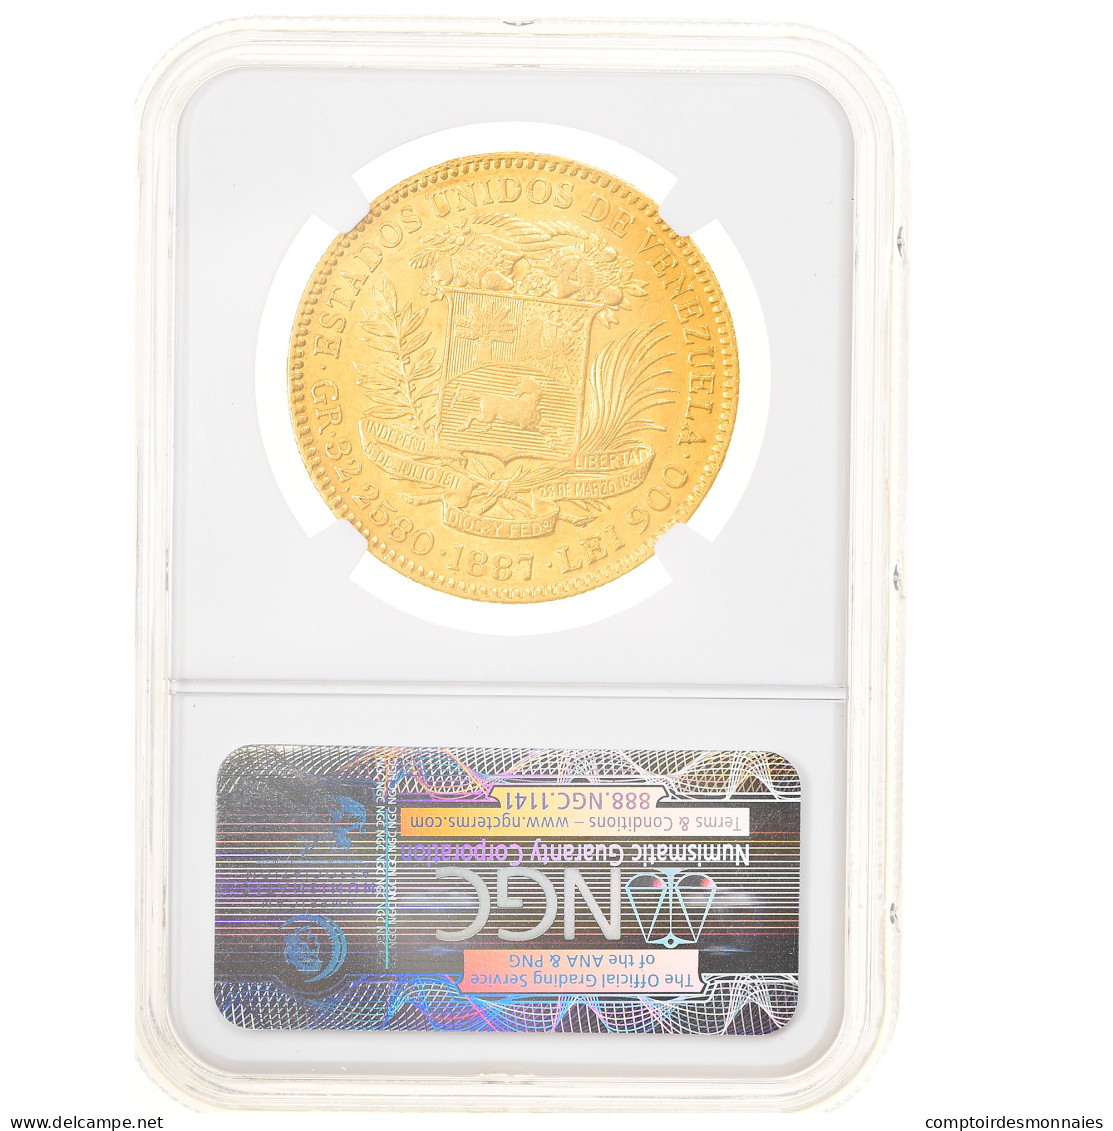 Monnaie, Venezuela, 100 Bolivares, 1887, Caracas, NGC, AU58, SUP, Or, KM:34 - Venezuela